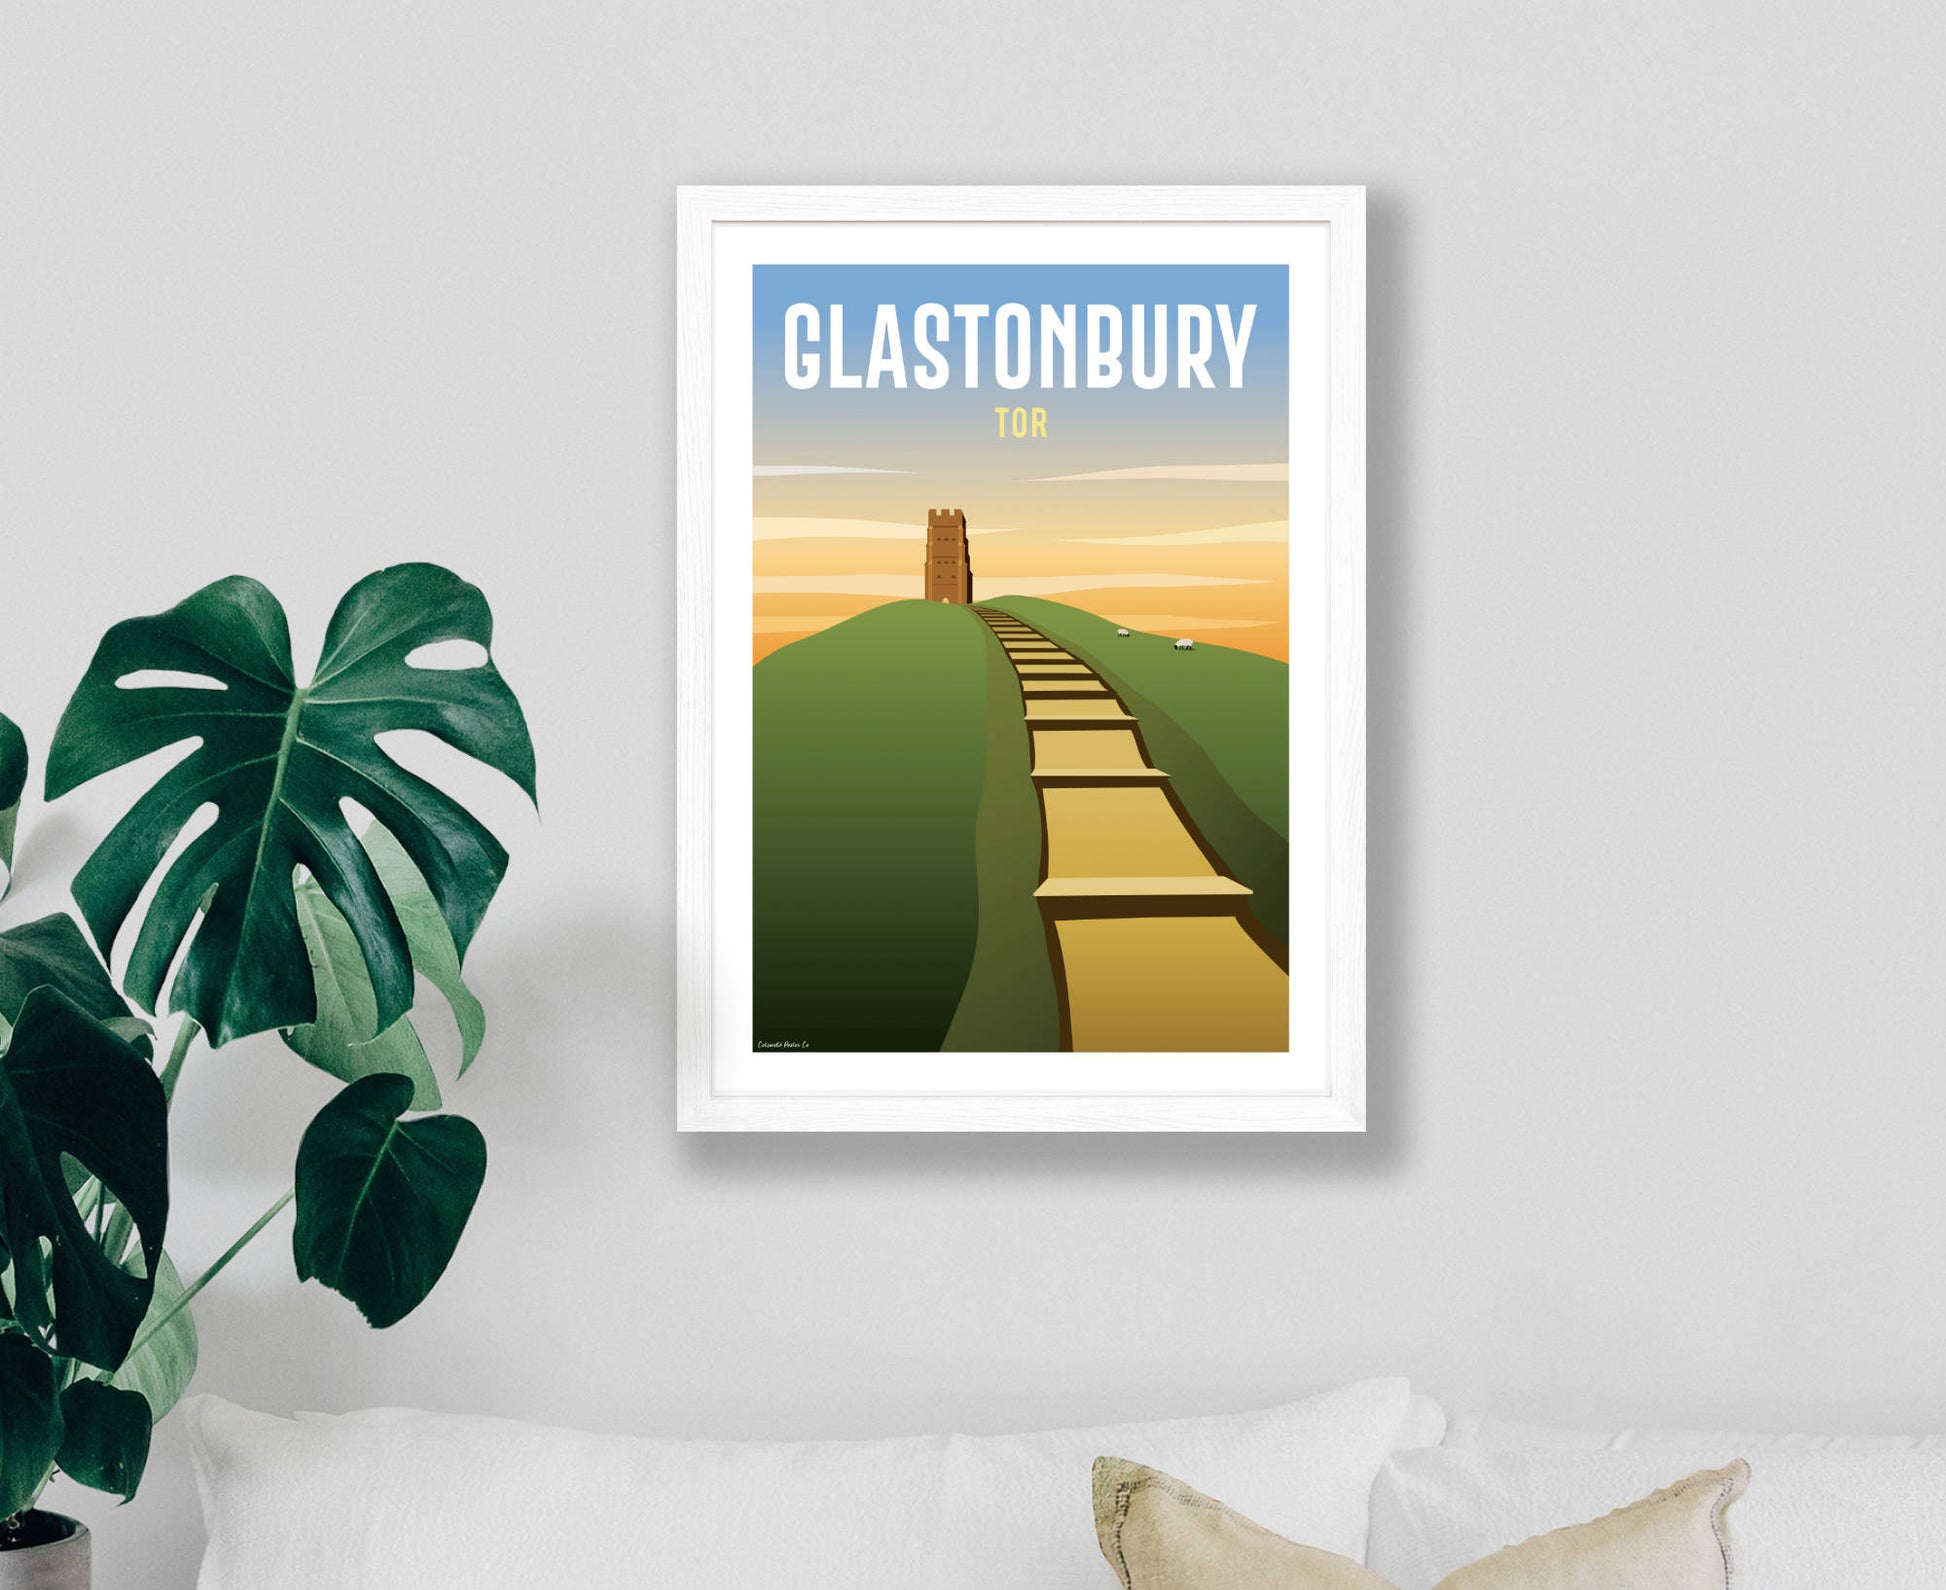 Glastonbury Tor Poster in white frame